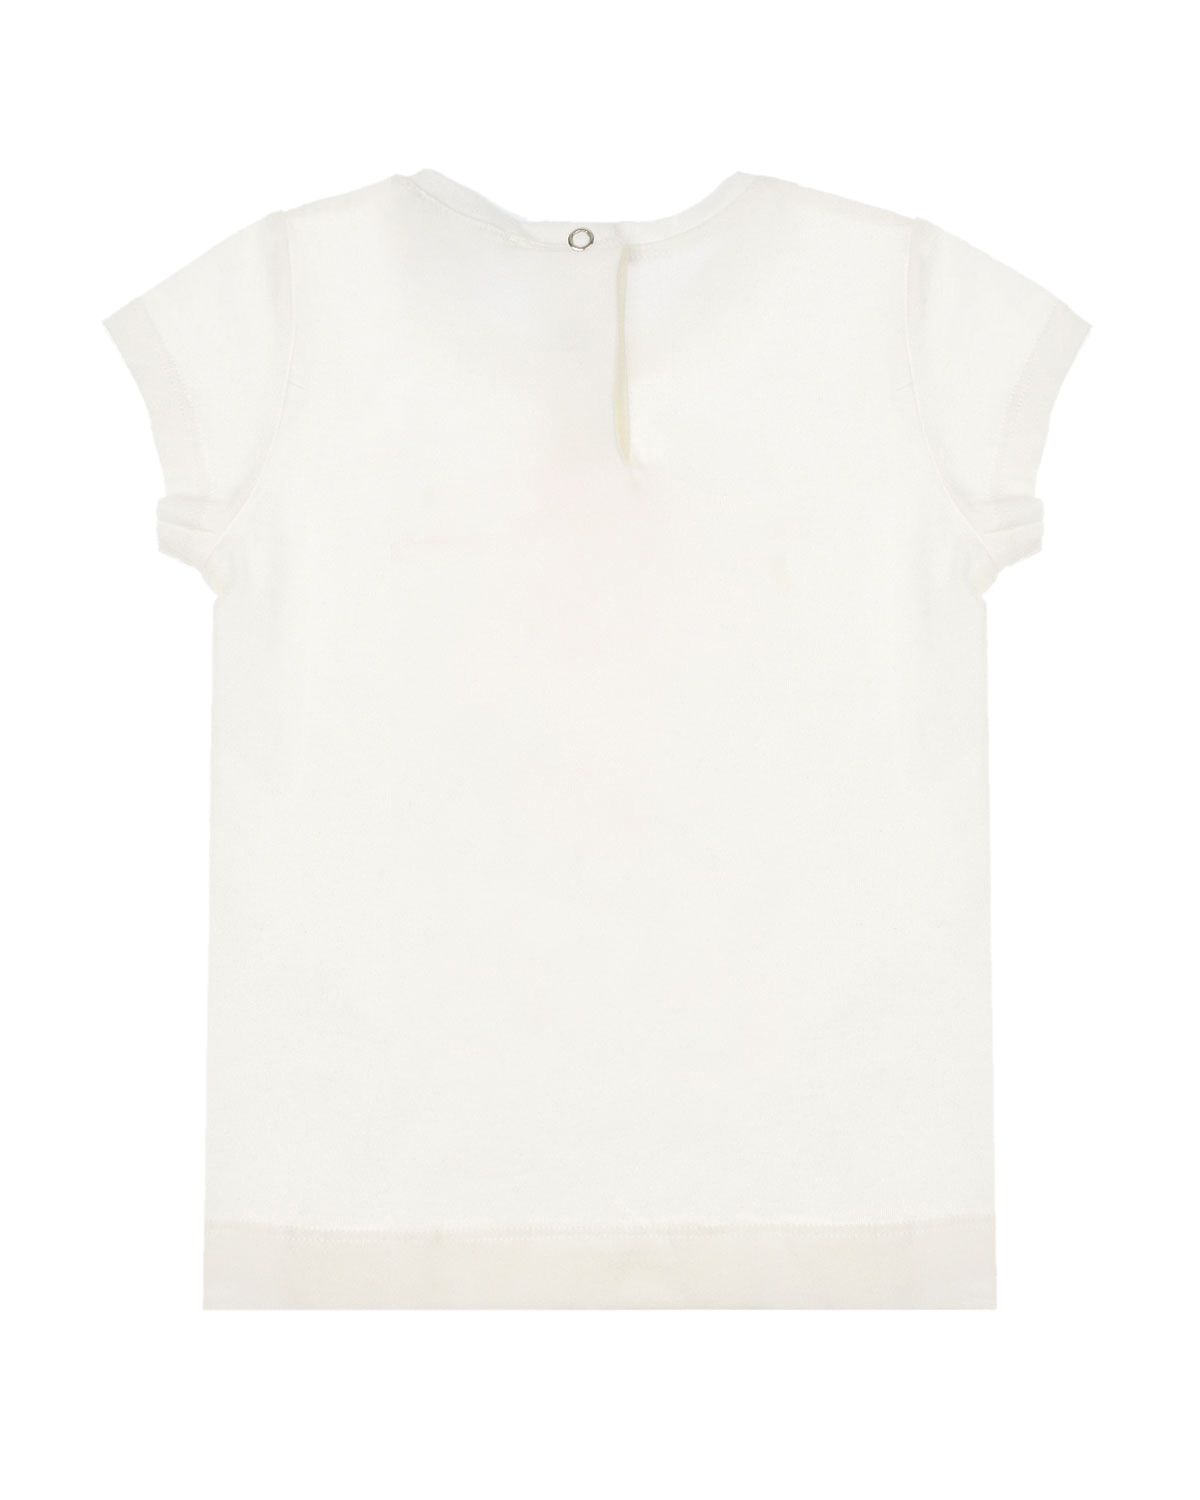 Белая футболка с принтом "балерина" Monnalisa детская, размер 74, цвет белый - фото 2